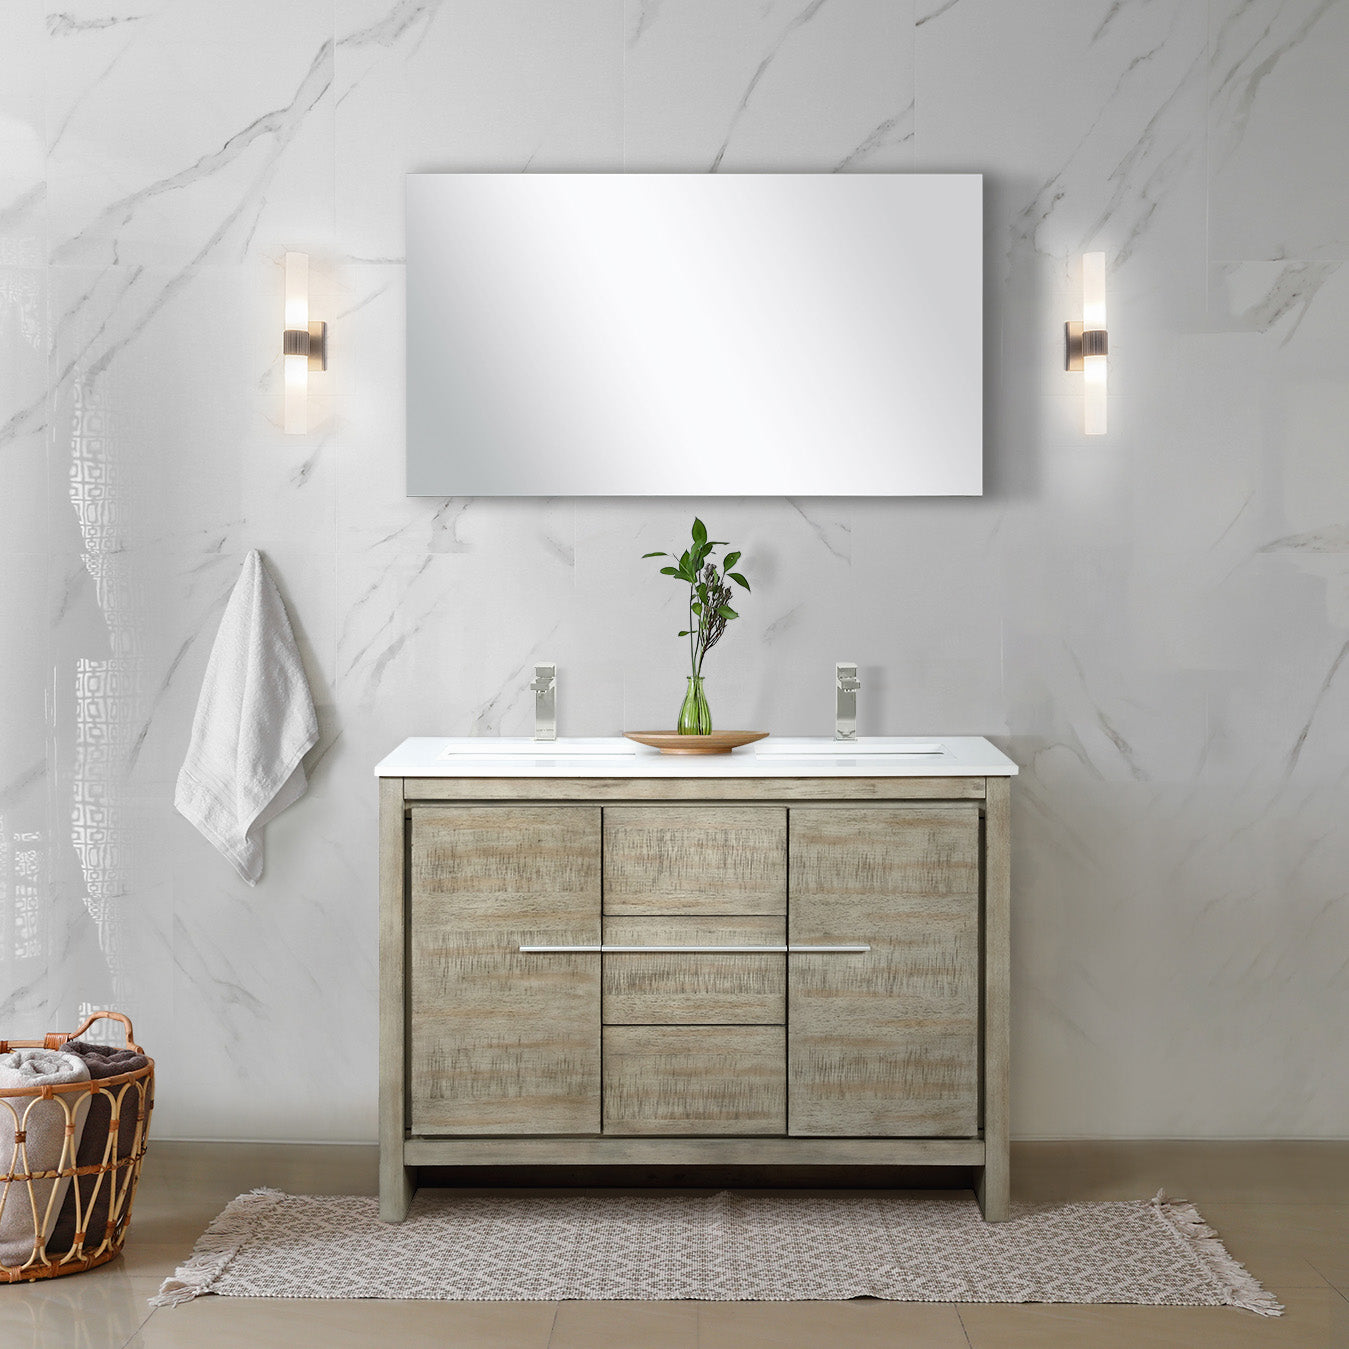 Lexora Bathroom Vanity Cultured Marble / No Faucet / No Mirror Lafarre 48" Rustic Acacia Double Bathroom Vanity